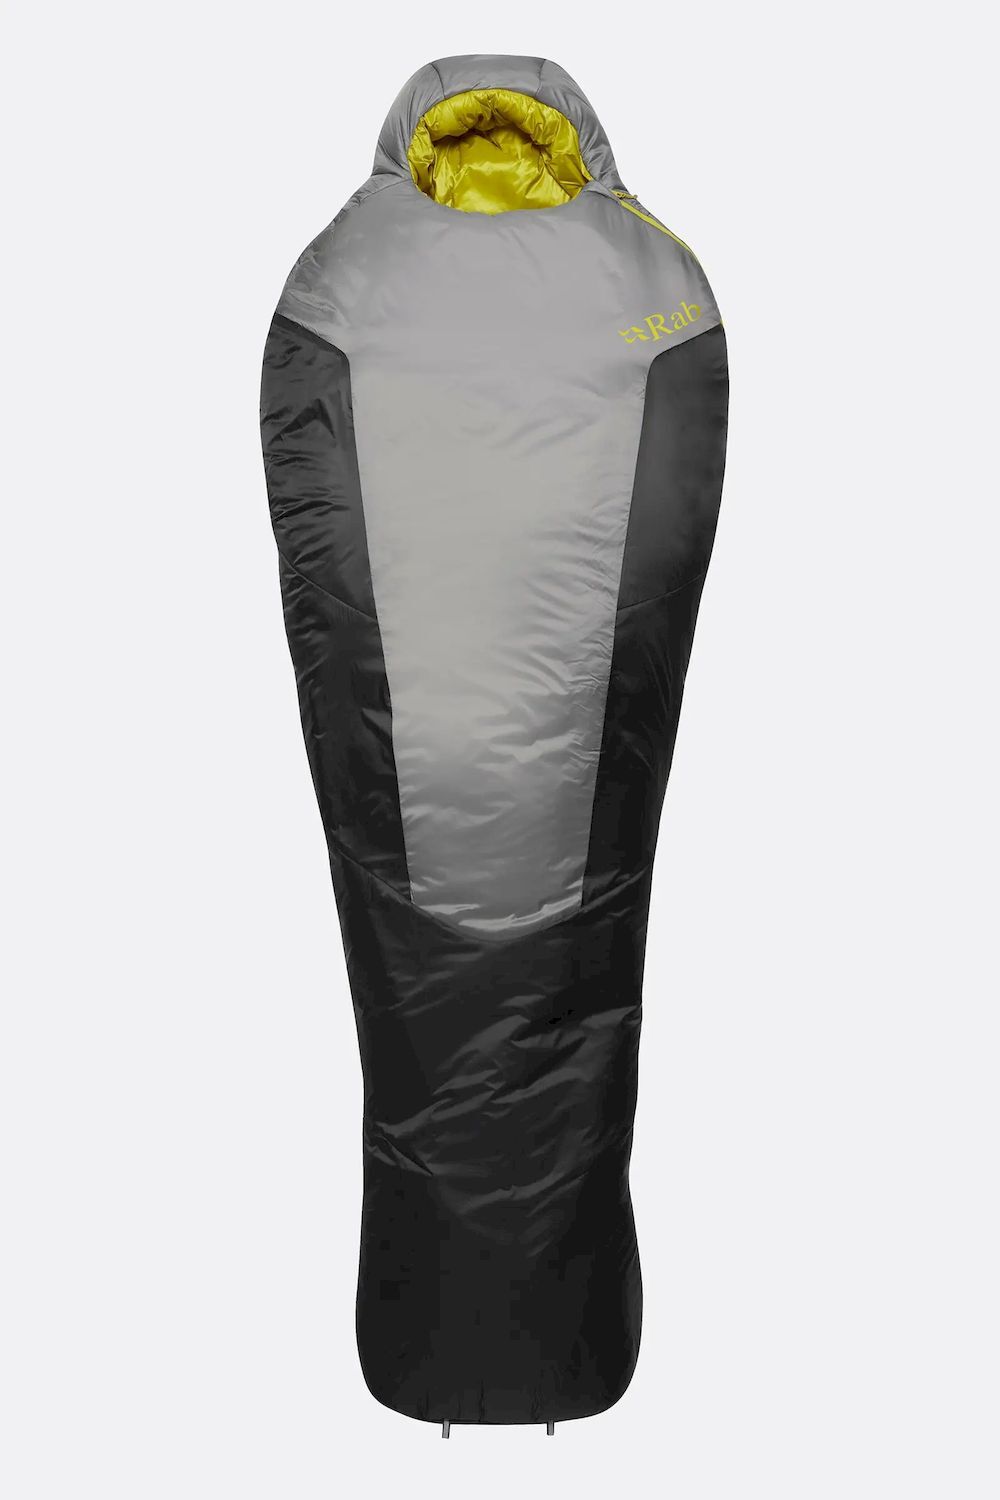 Rab Solar Ultra 2 - Sleeping bag - 0